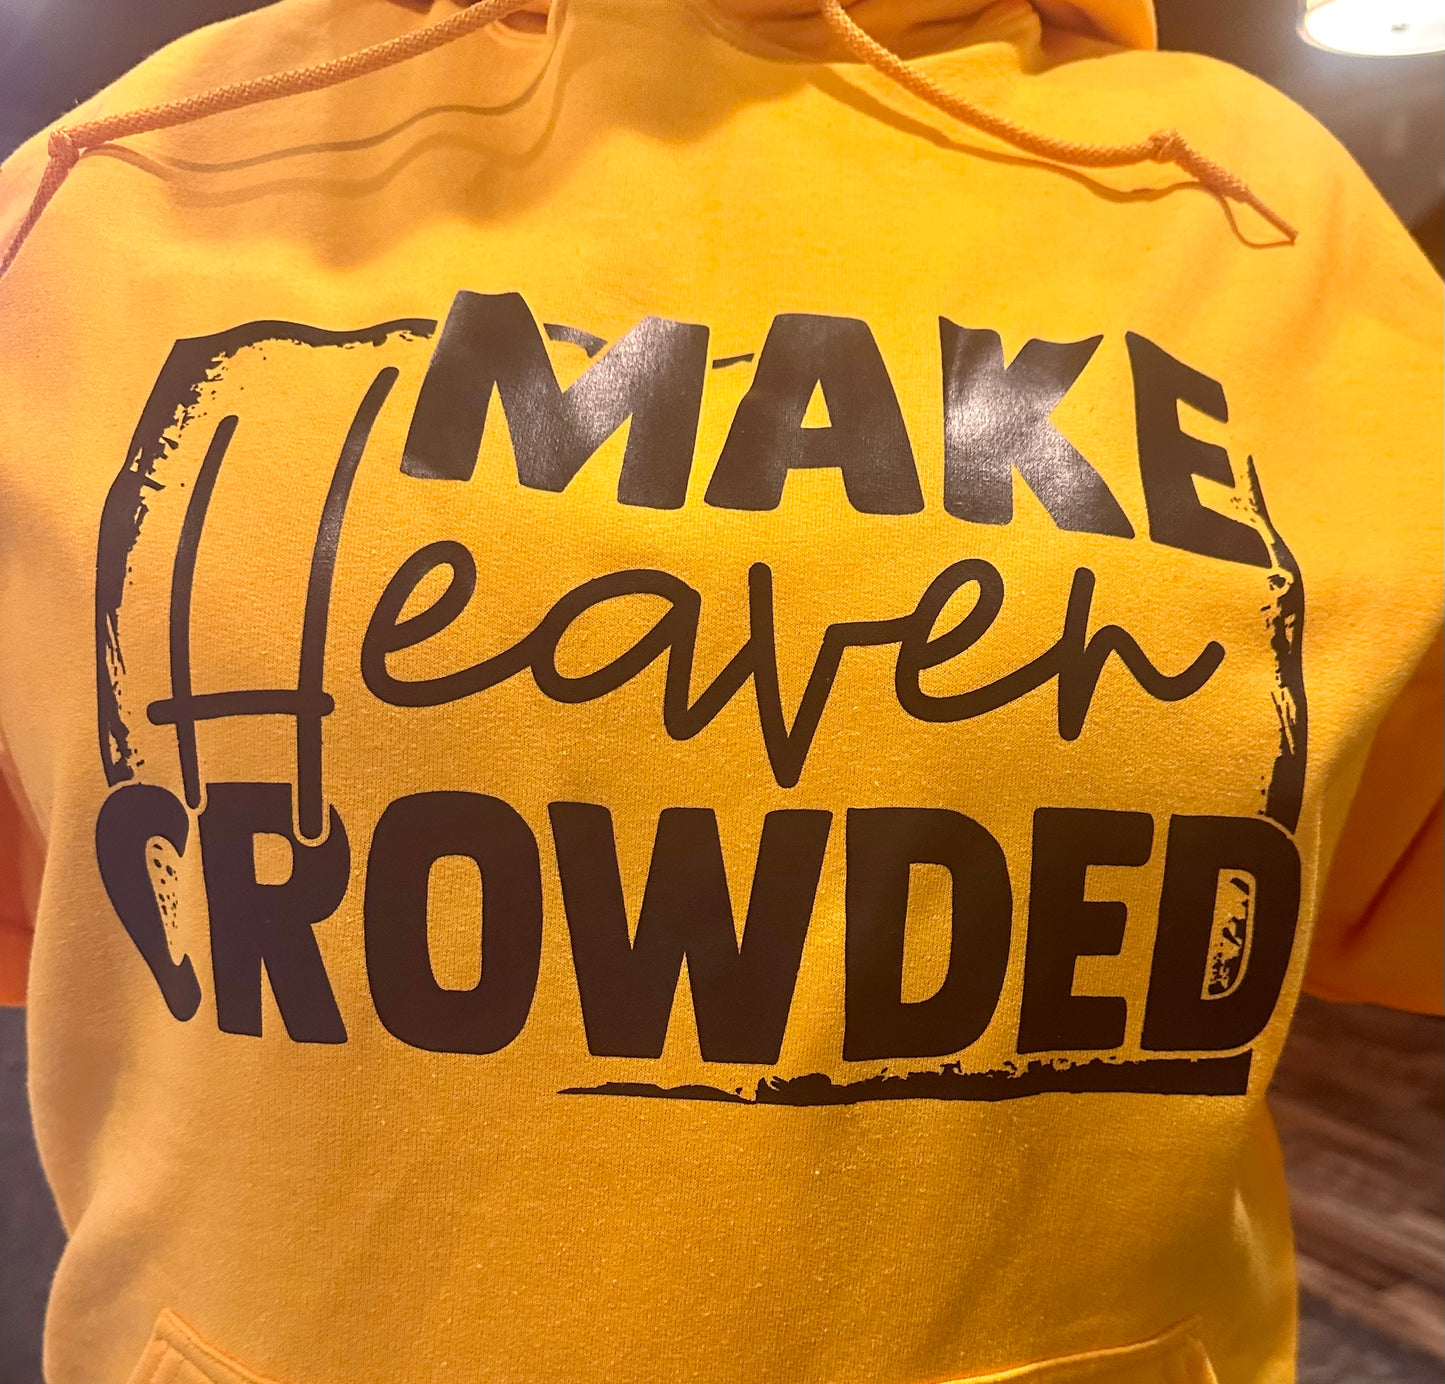 Make Heaven Crowded hoodie